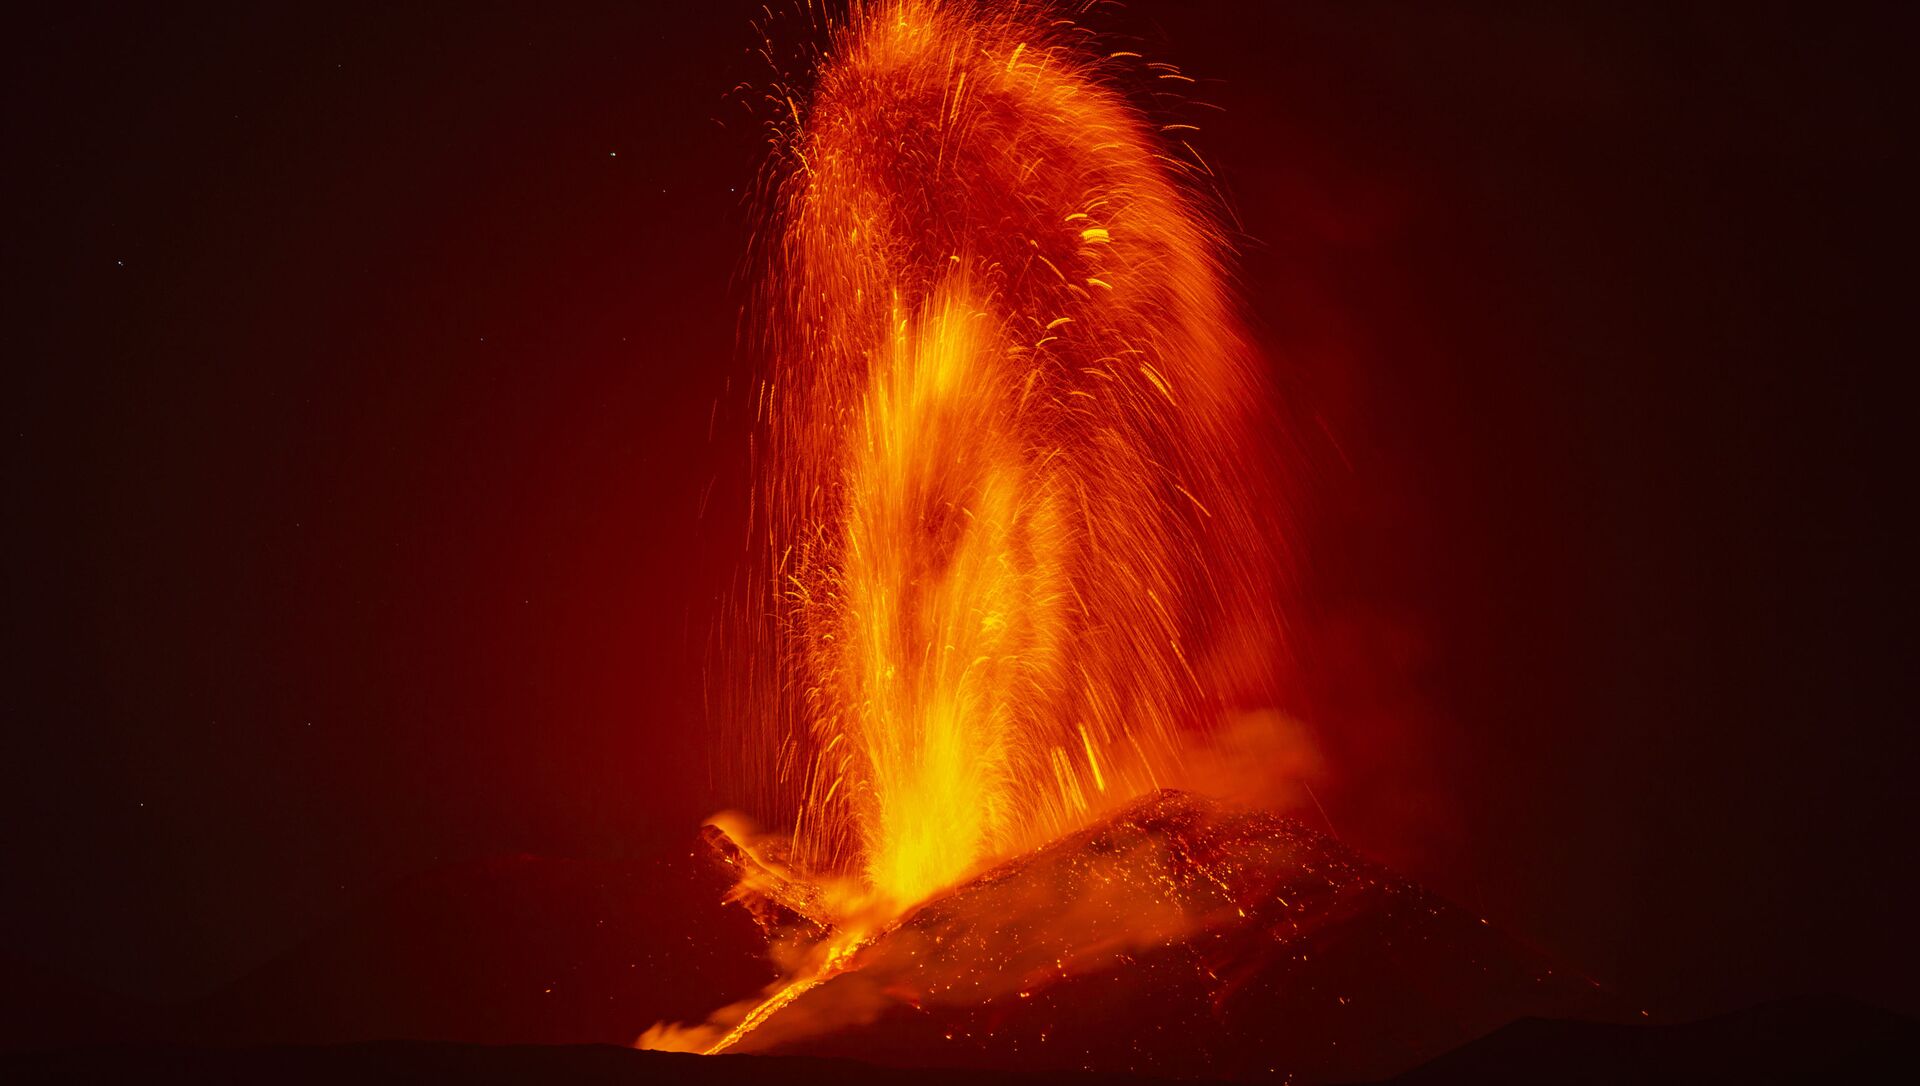 Фонтан лавы во время извержения вулкана Этна в Италии  - Sputnik Արմենիա, 1920, 09.08.2021